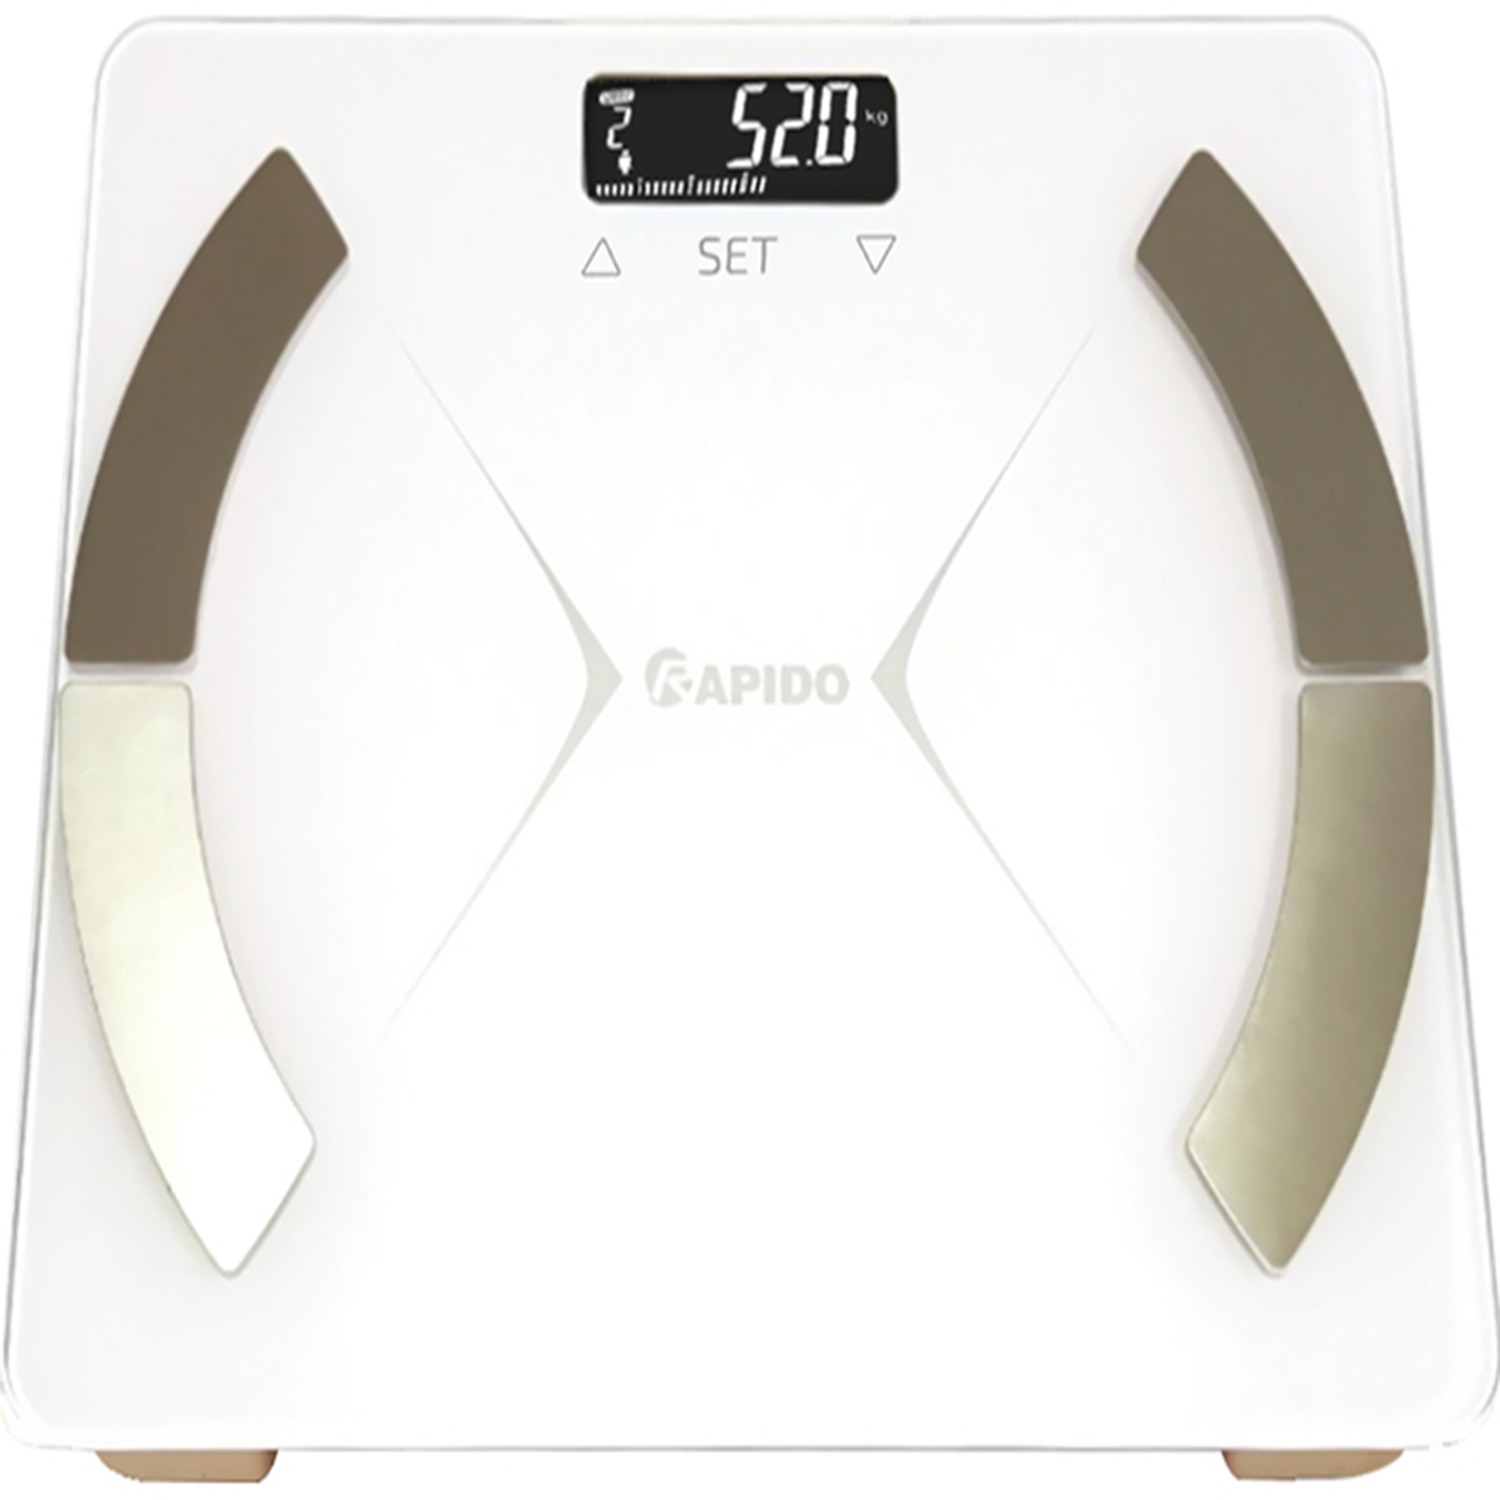 Cân Sức Khỏe chuyên phân tích chỉ số cơ thể chính xác Rapido- RSF01 màu trắng sang trọng - Cam kết hàng chính hãng- Tặng kèm pin sẵn khi mua cân